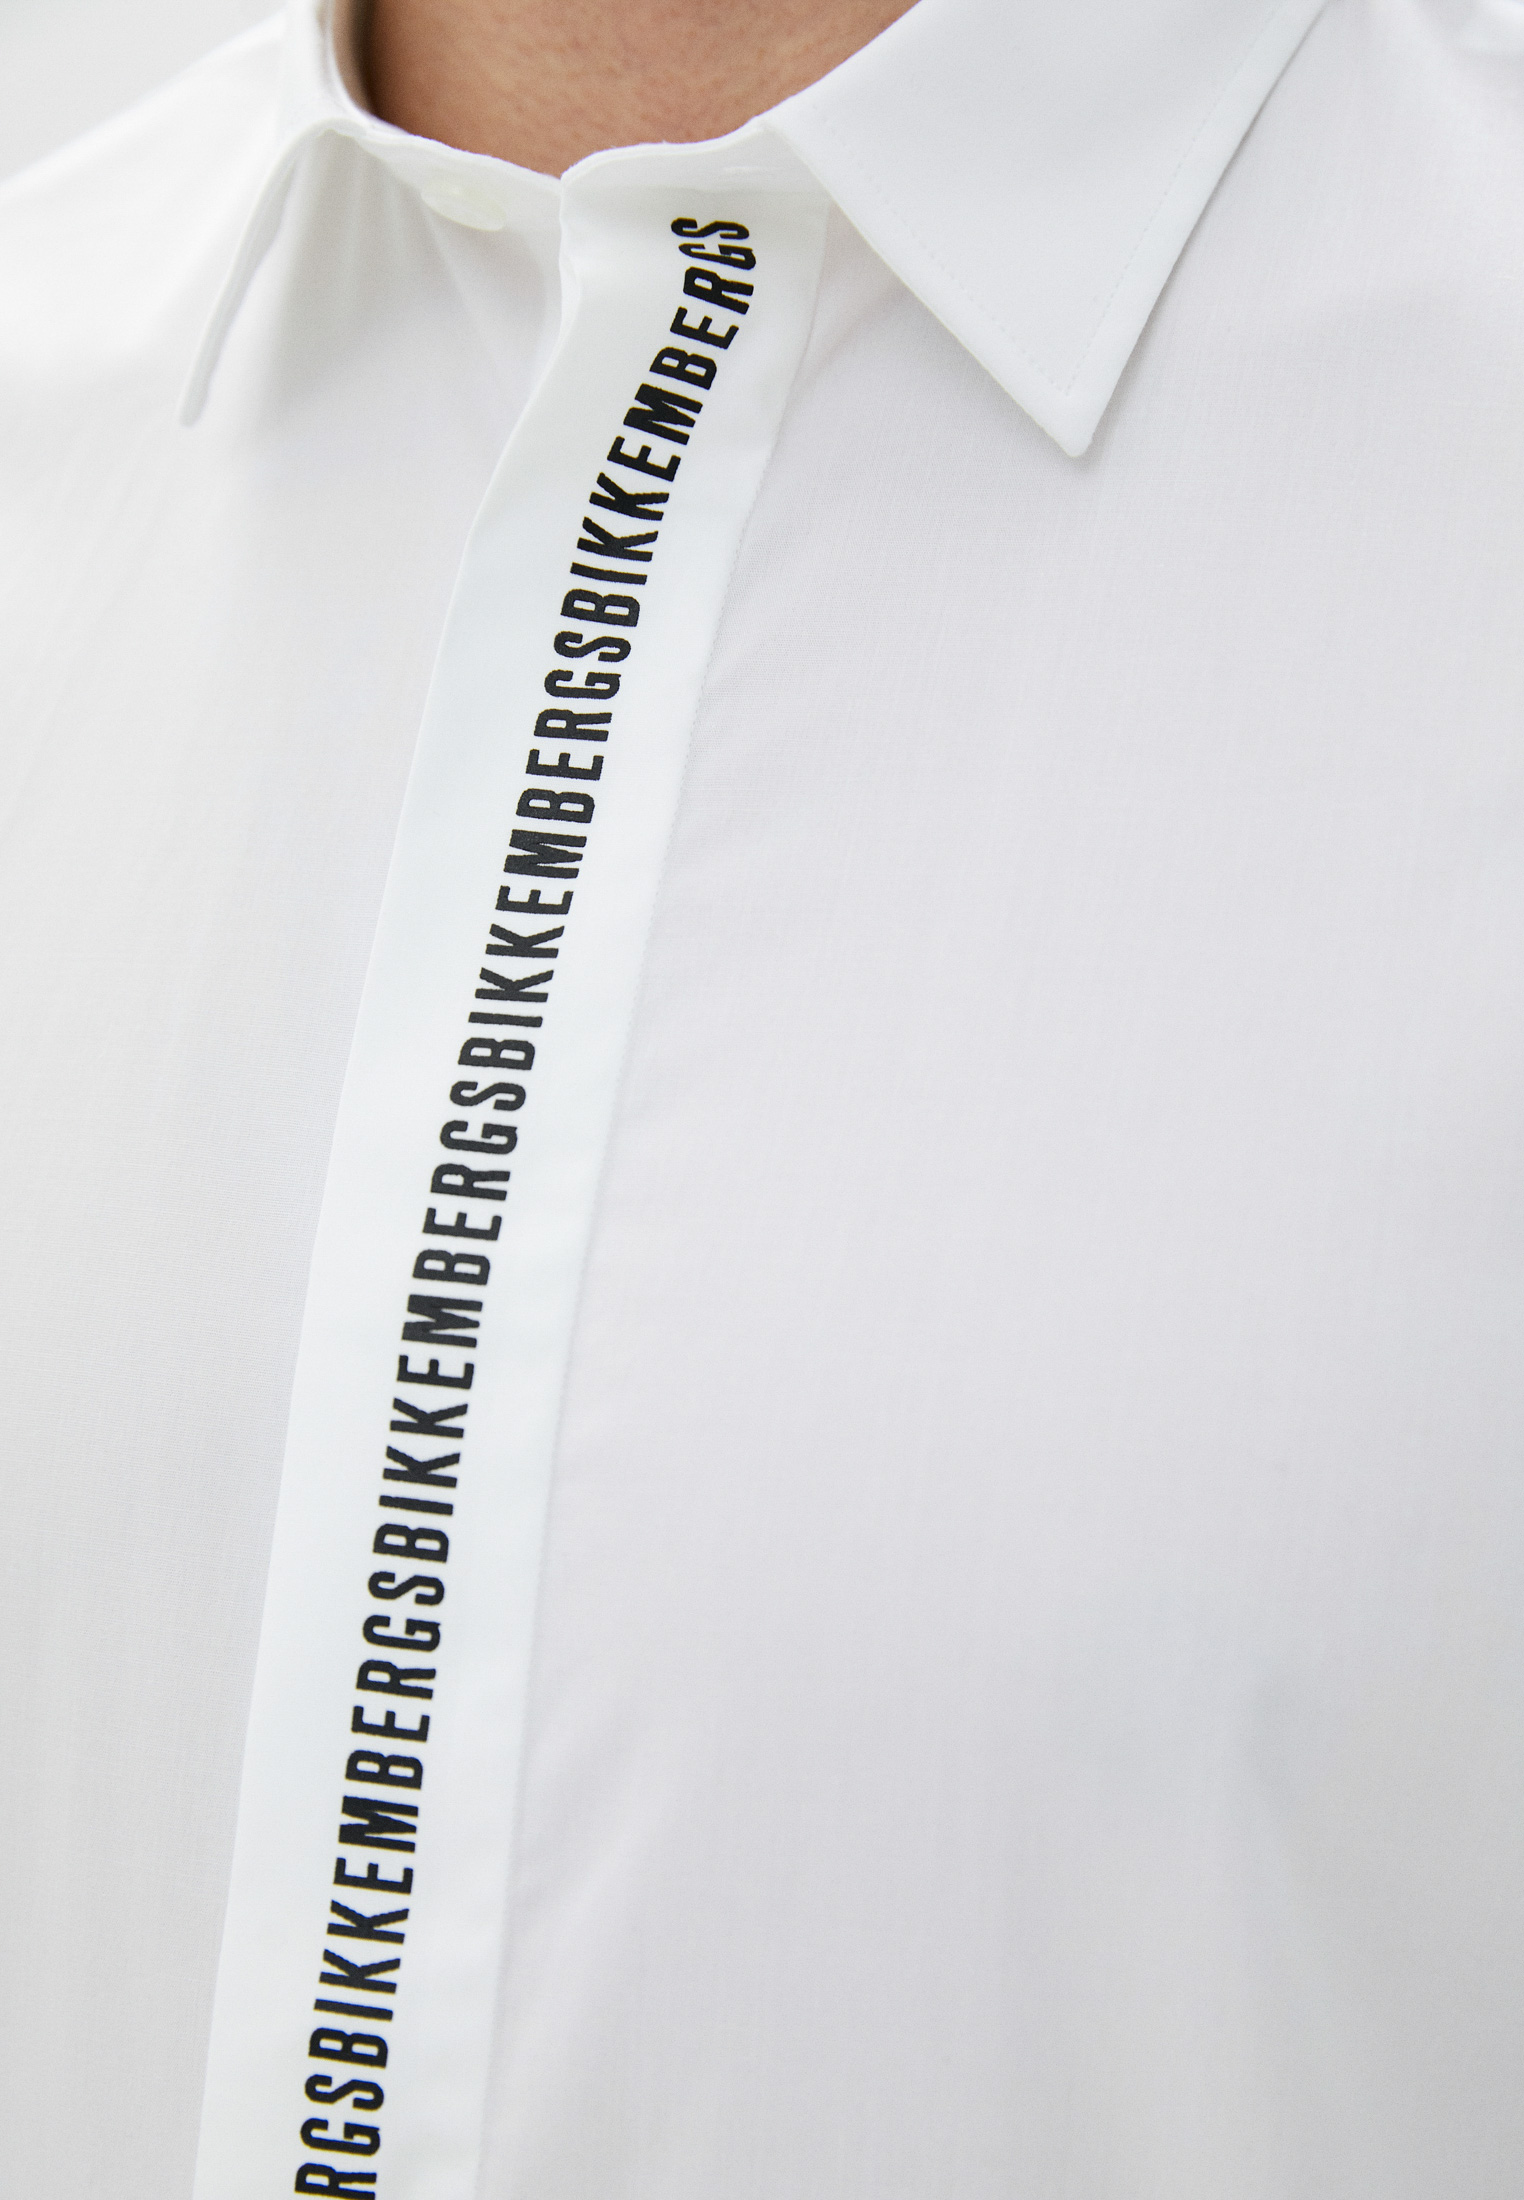 Рубашка с длинным рукавом Bikkembergs (Биккембергс) C C 011 03 S 2931: изображение 15